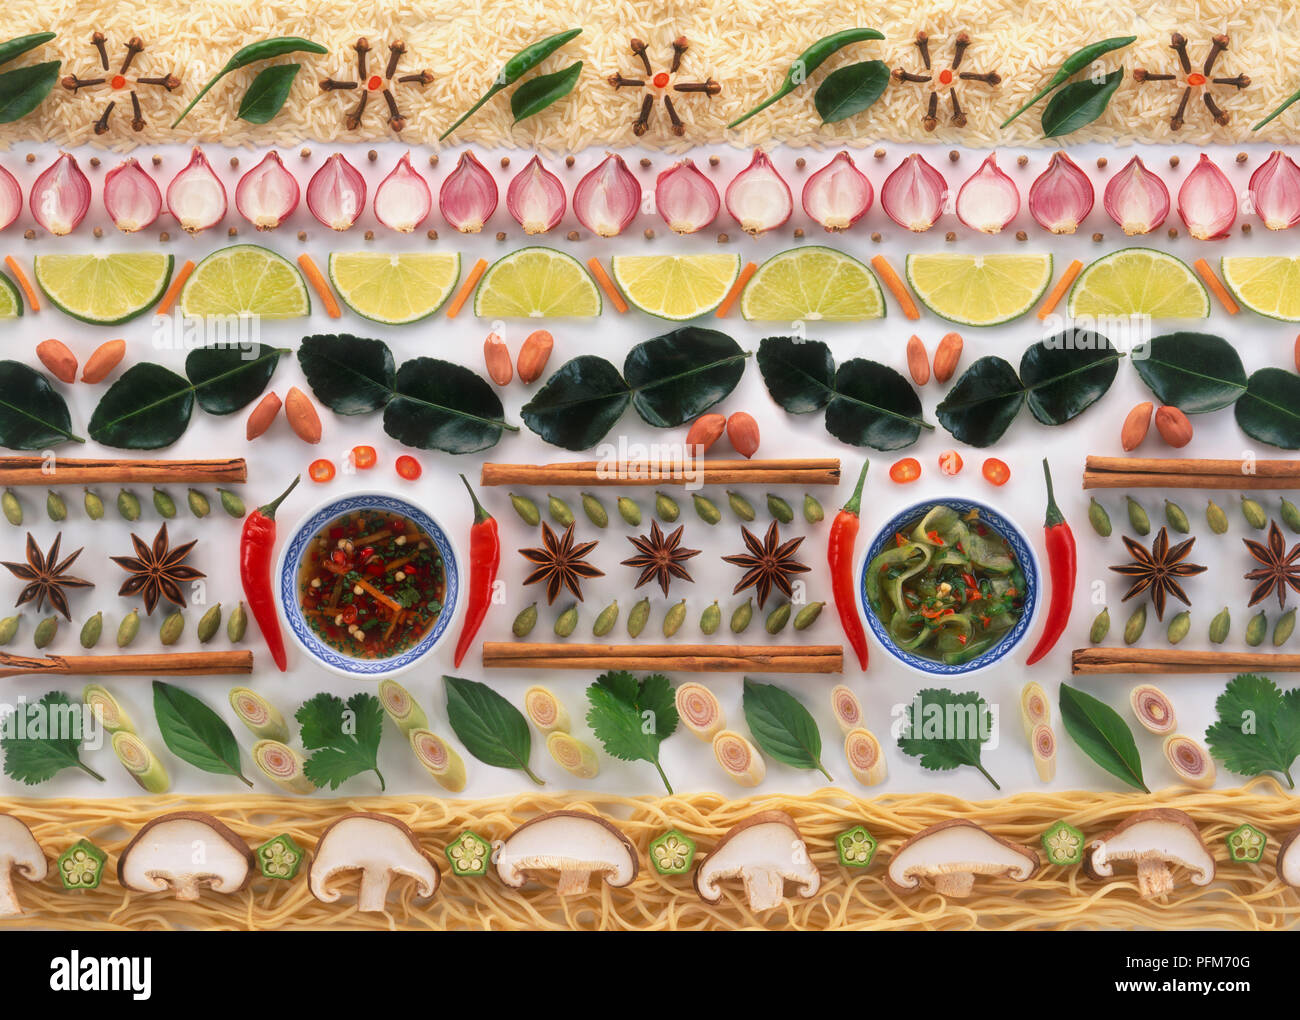 Linee di ingredienti utilizzati in cucina asiatica, incluso il riso, verdure, frutta, erbe e spezie Foto Stock